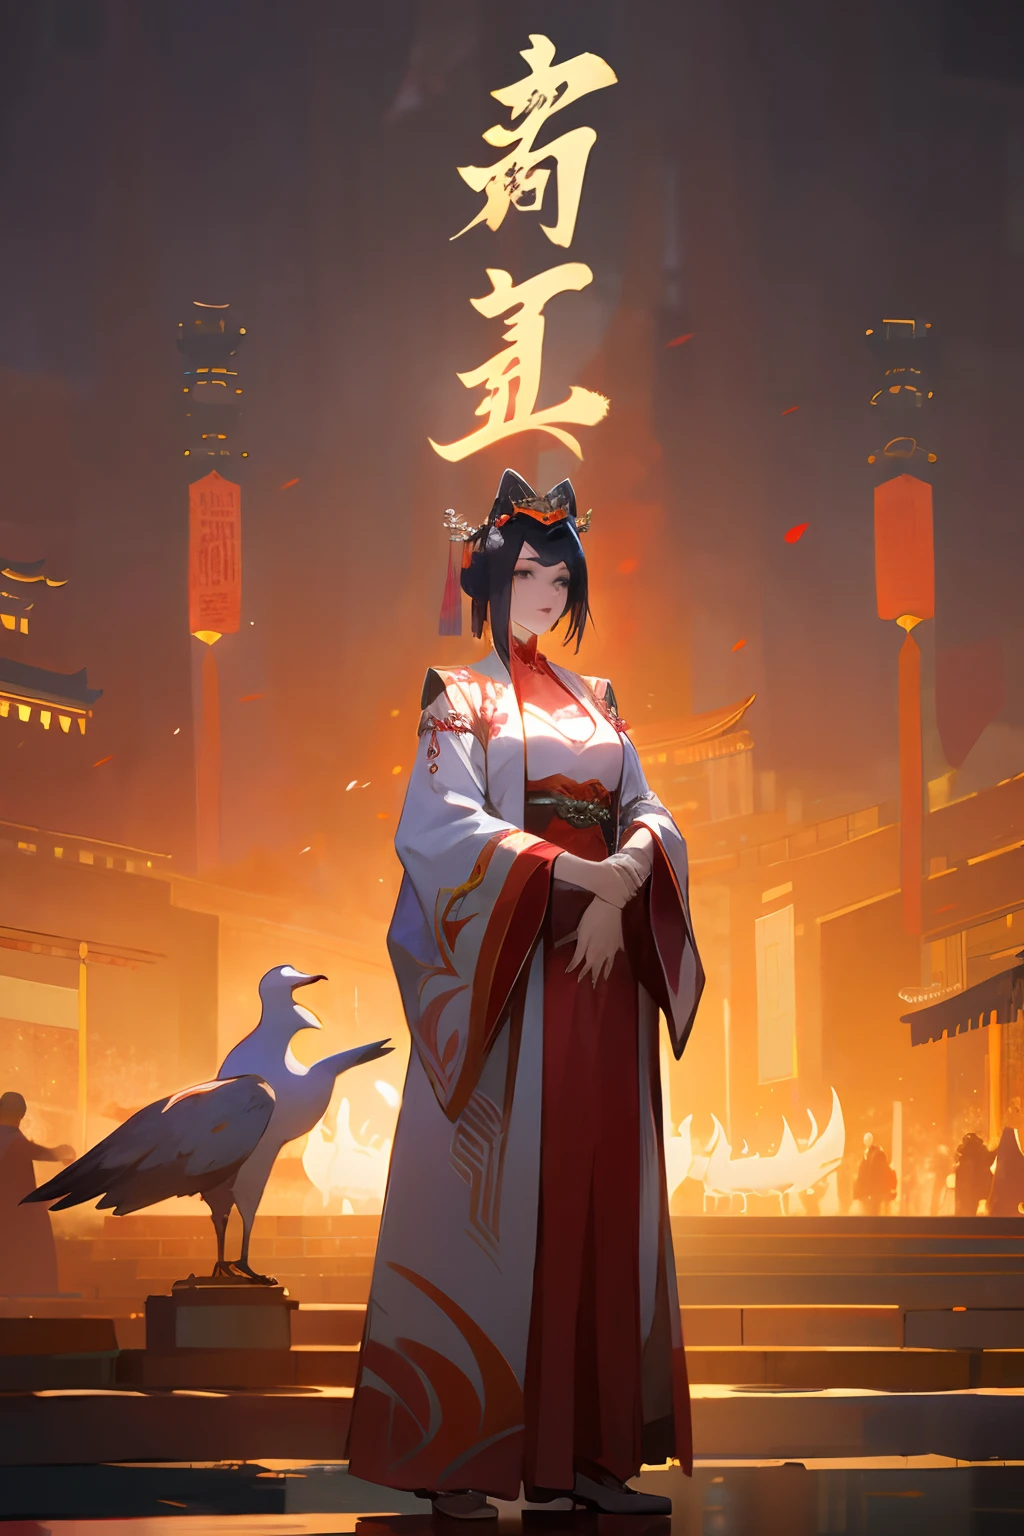 고대 중국 의상을 입은 소녀，백한복，일어서다，주변에는 흰색 등불로 장식되어 있습니다.， 중국 고대 도시，빅 구스 고대 도시， 모든 집의 등불